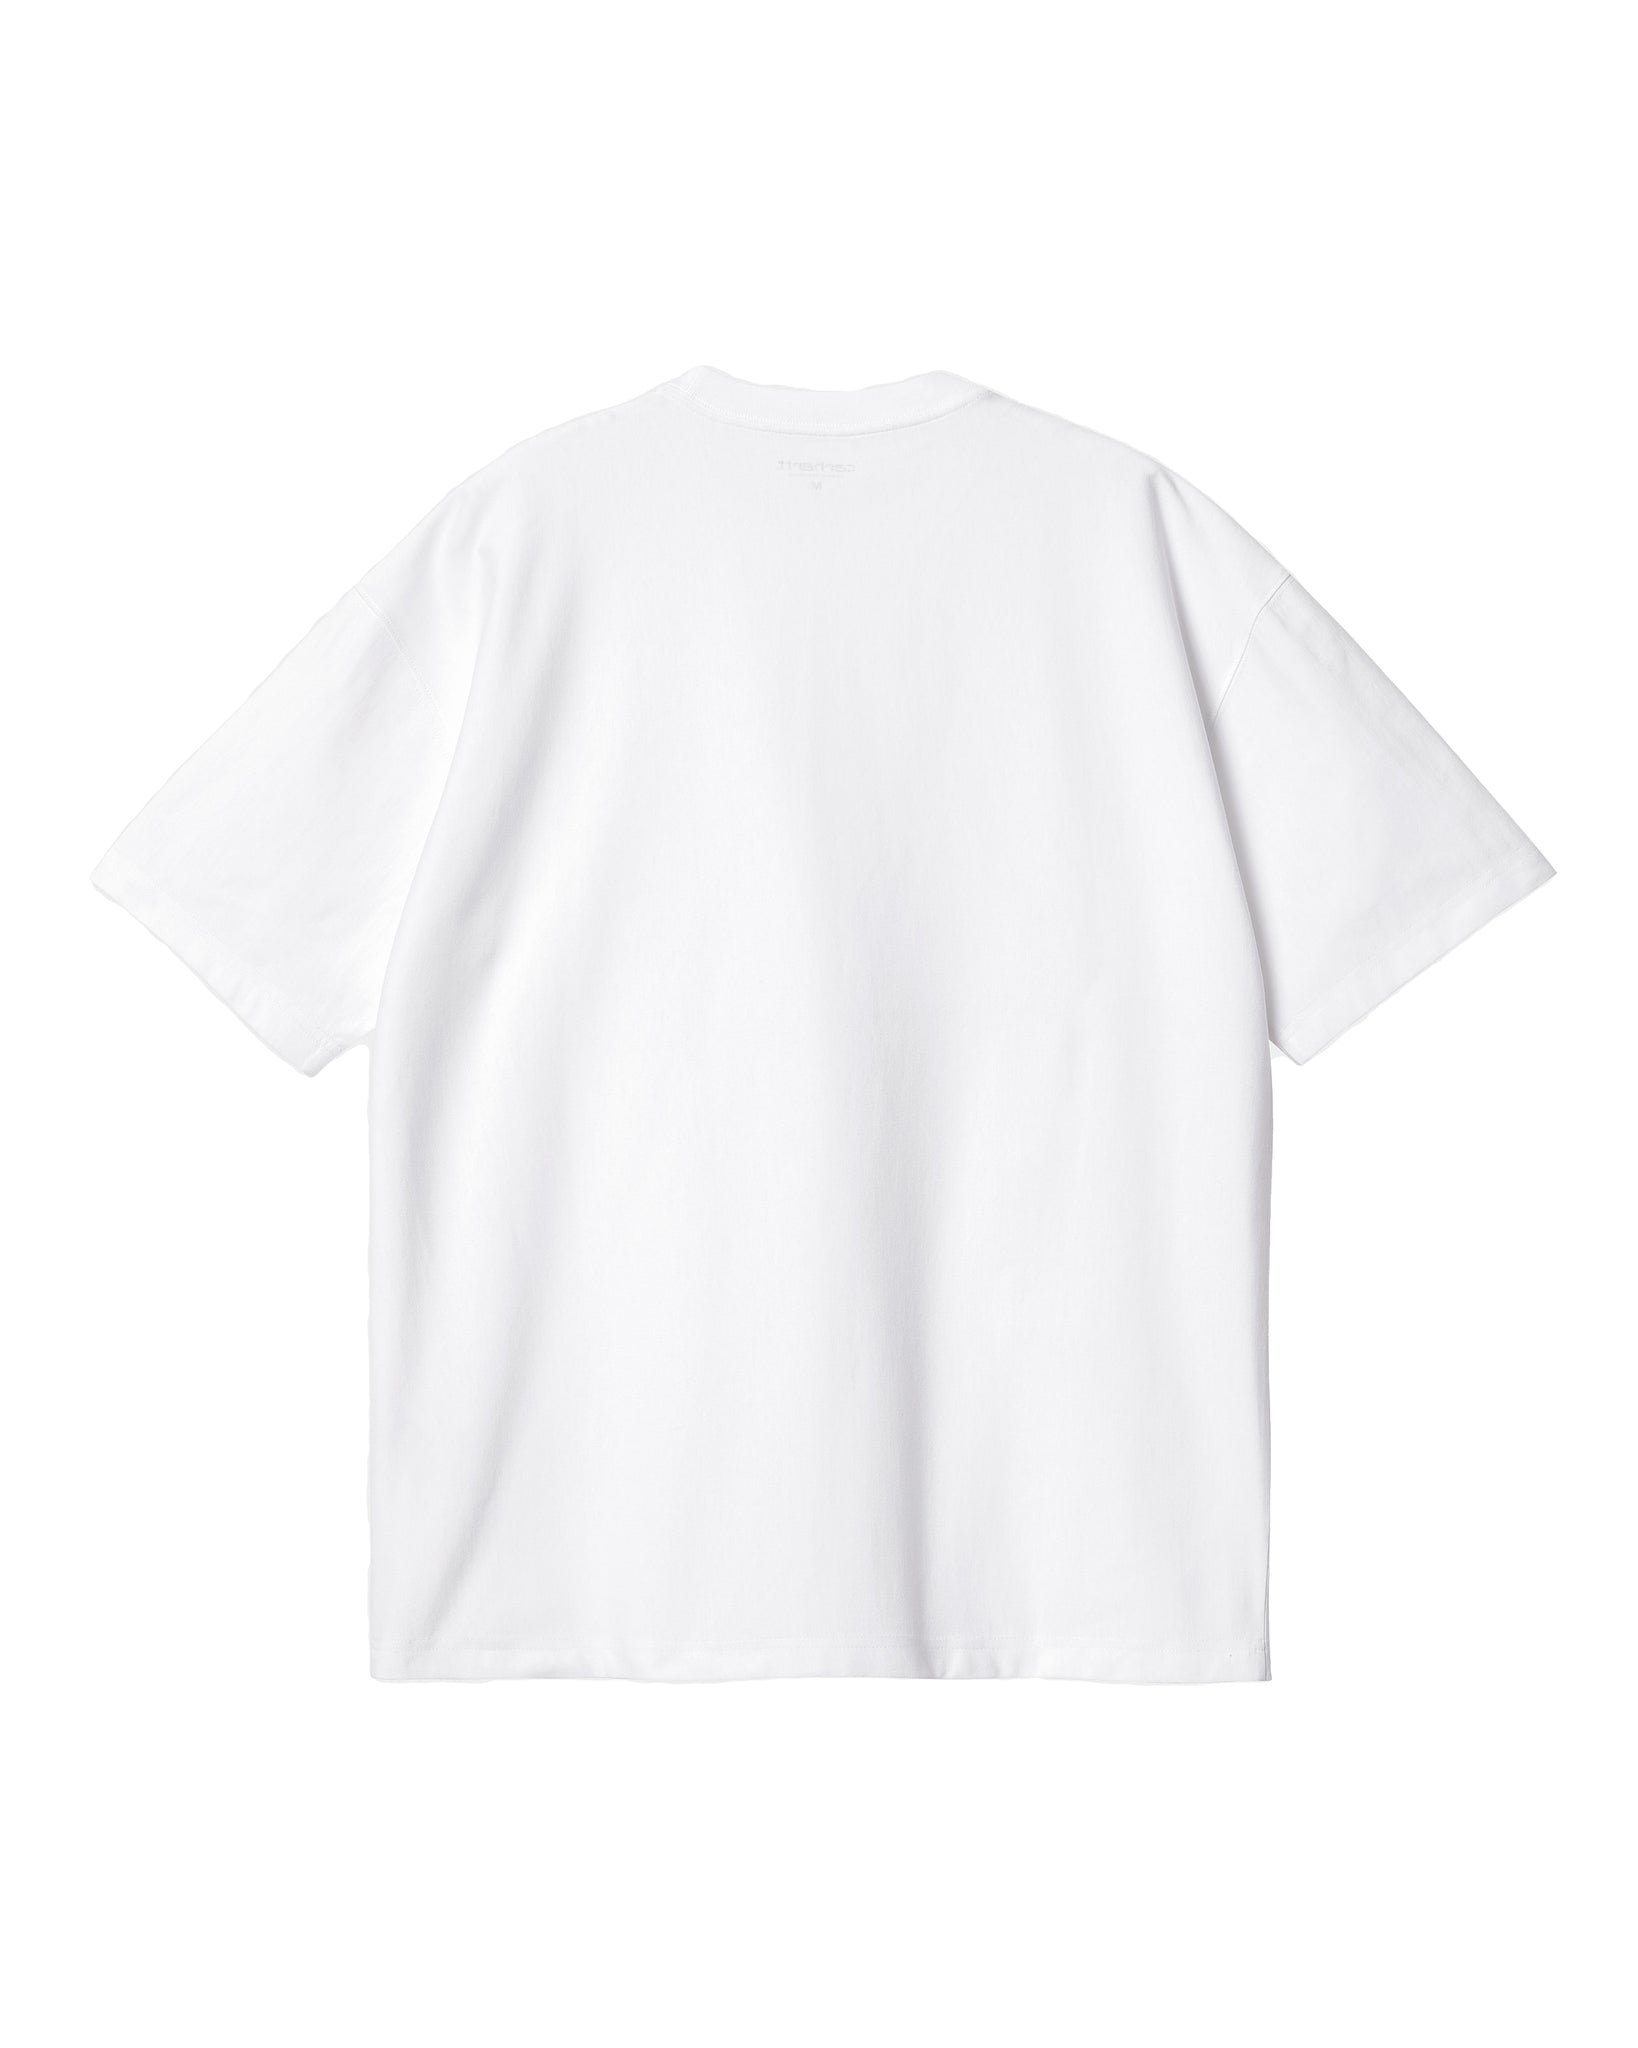 SS Dawson T-Shirt - White